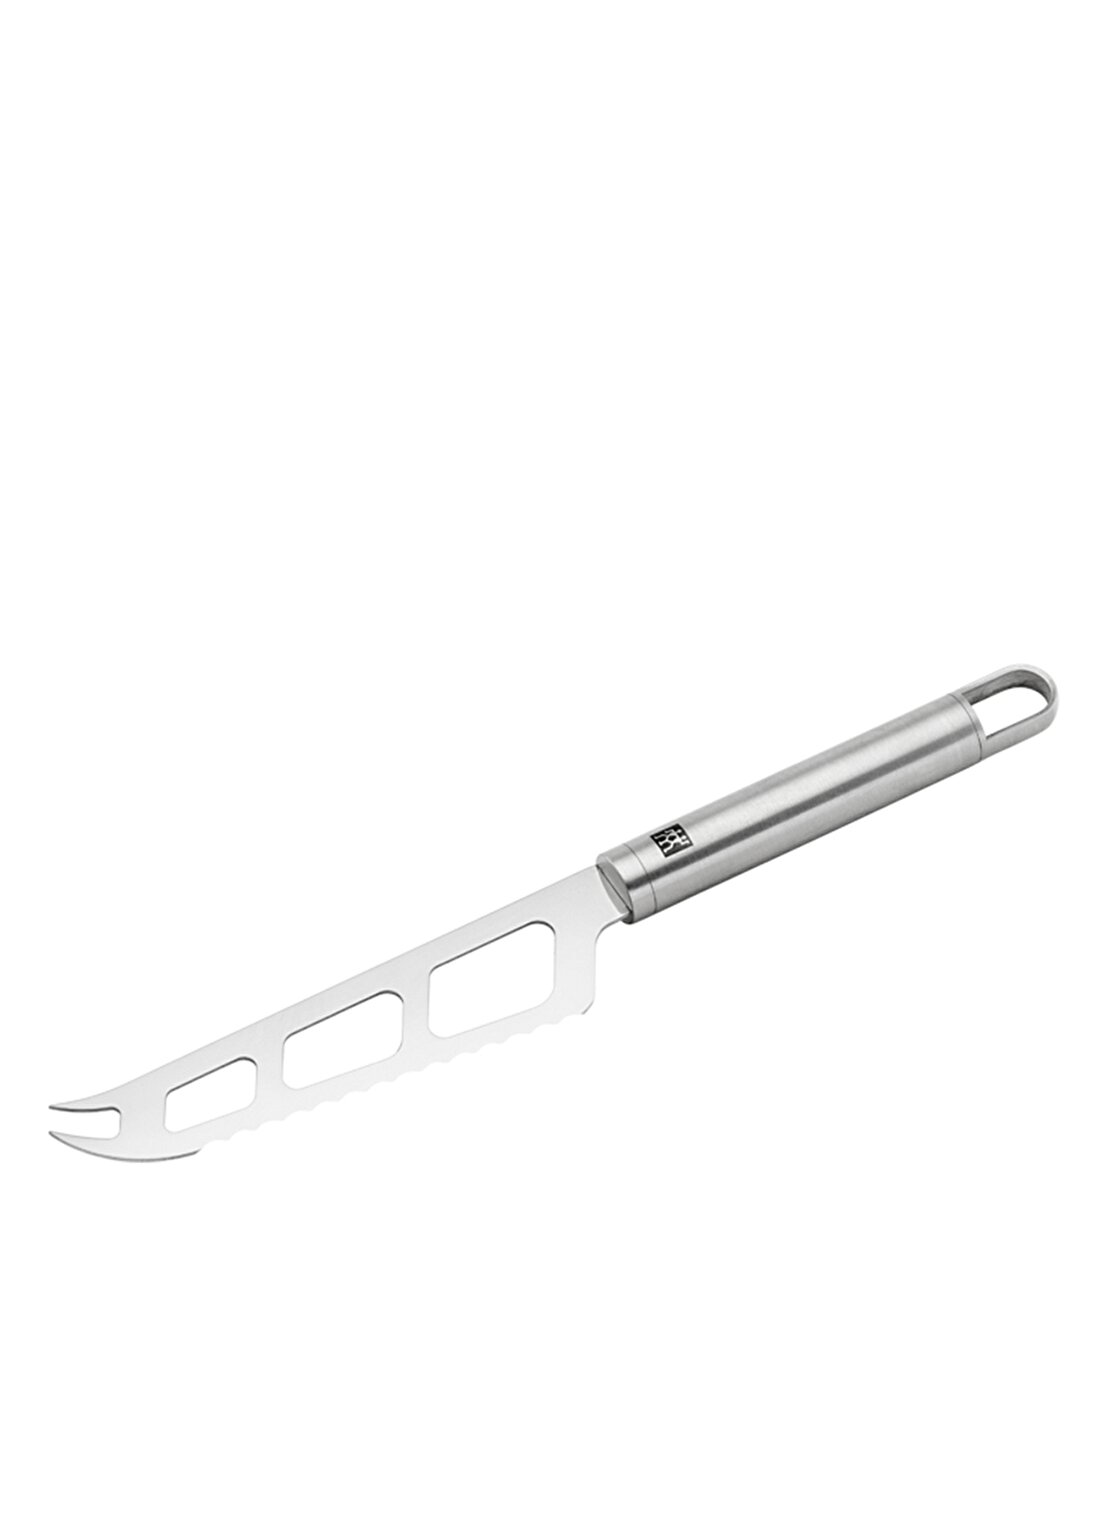 Zwilling 371600170 Pro Gadget Peynir Bıçağı